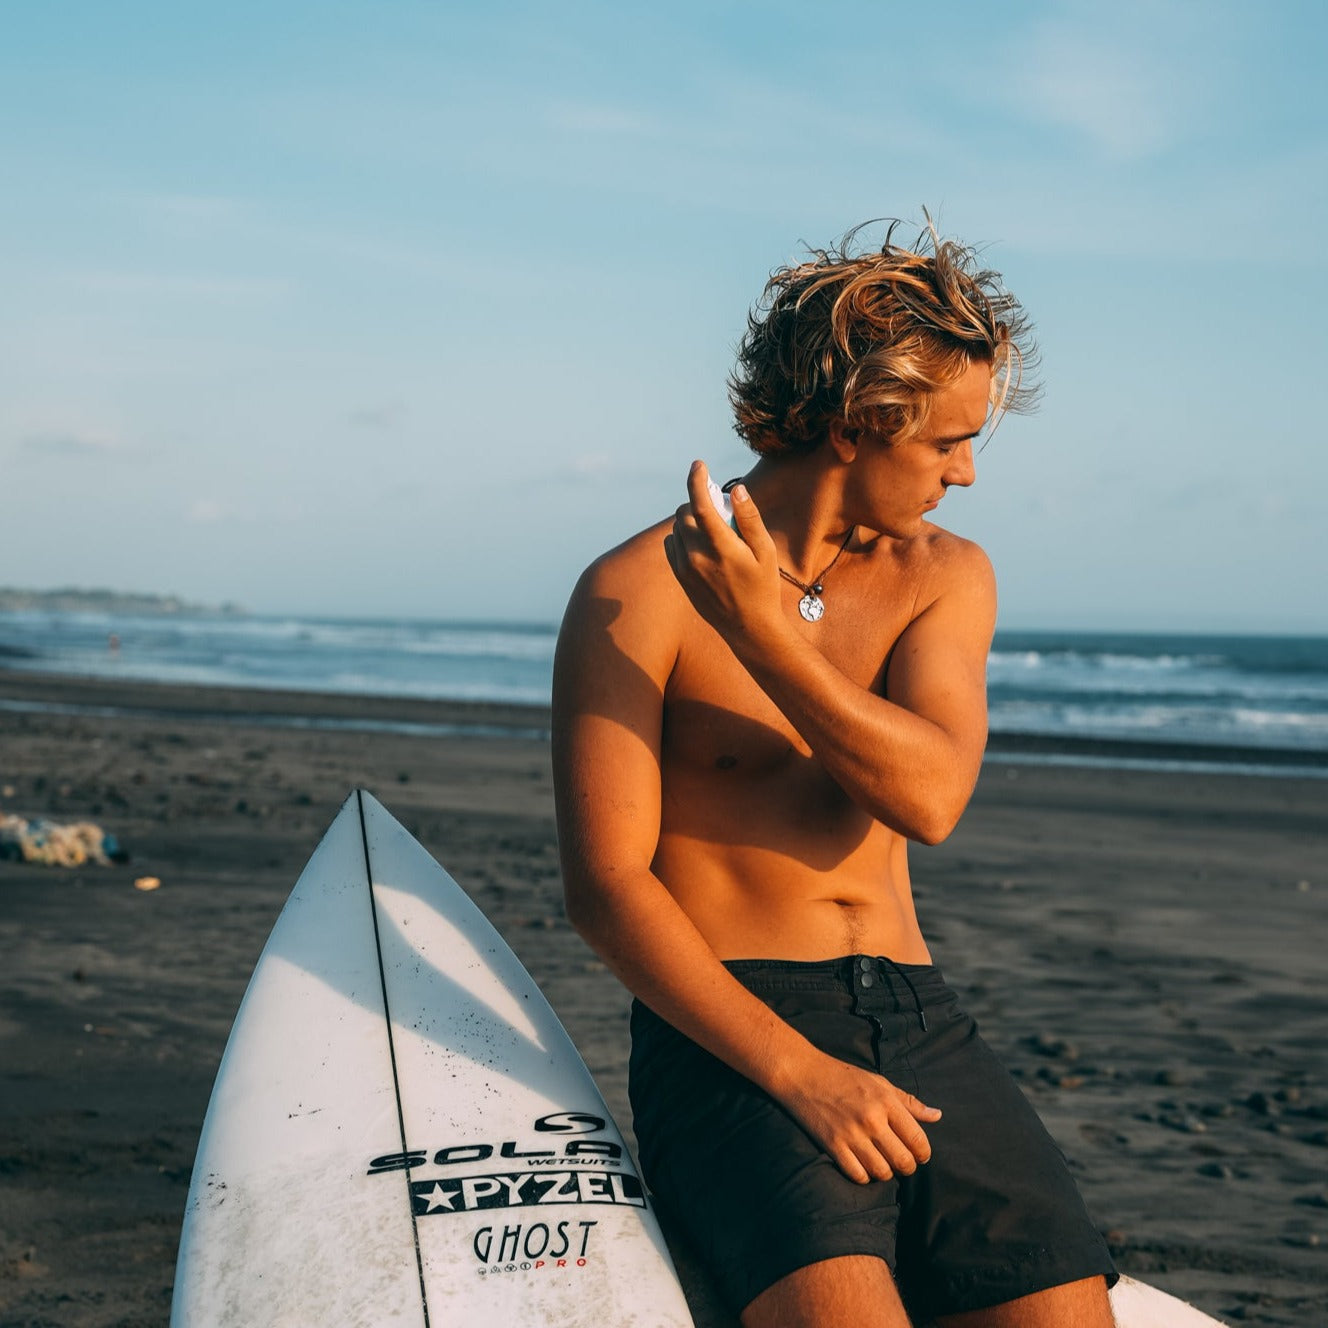 Surf Spray – Nelson j Hair Care